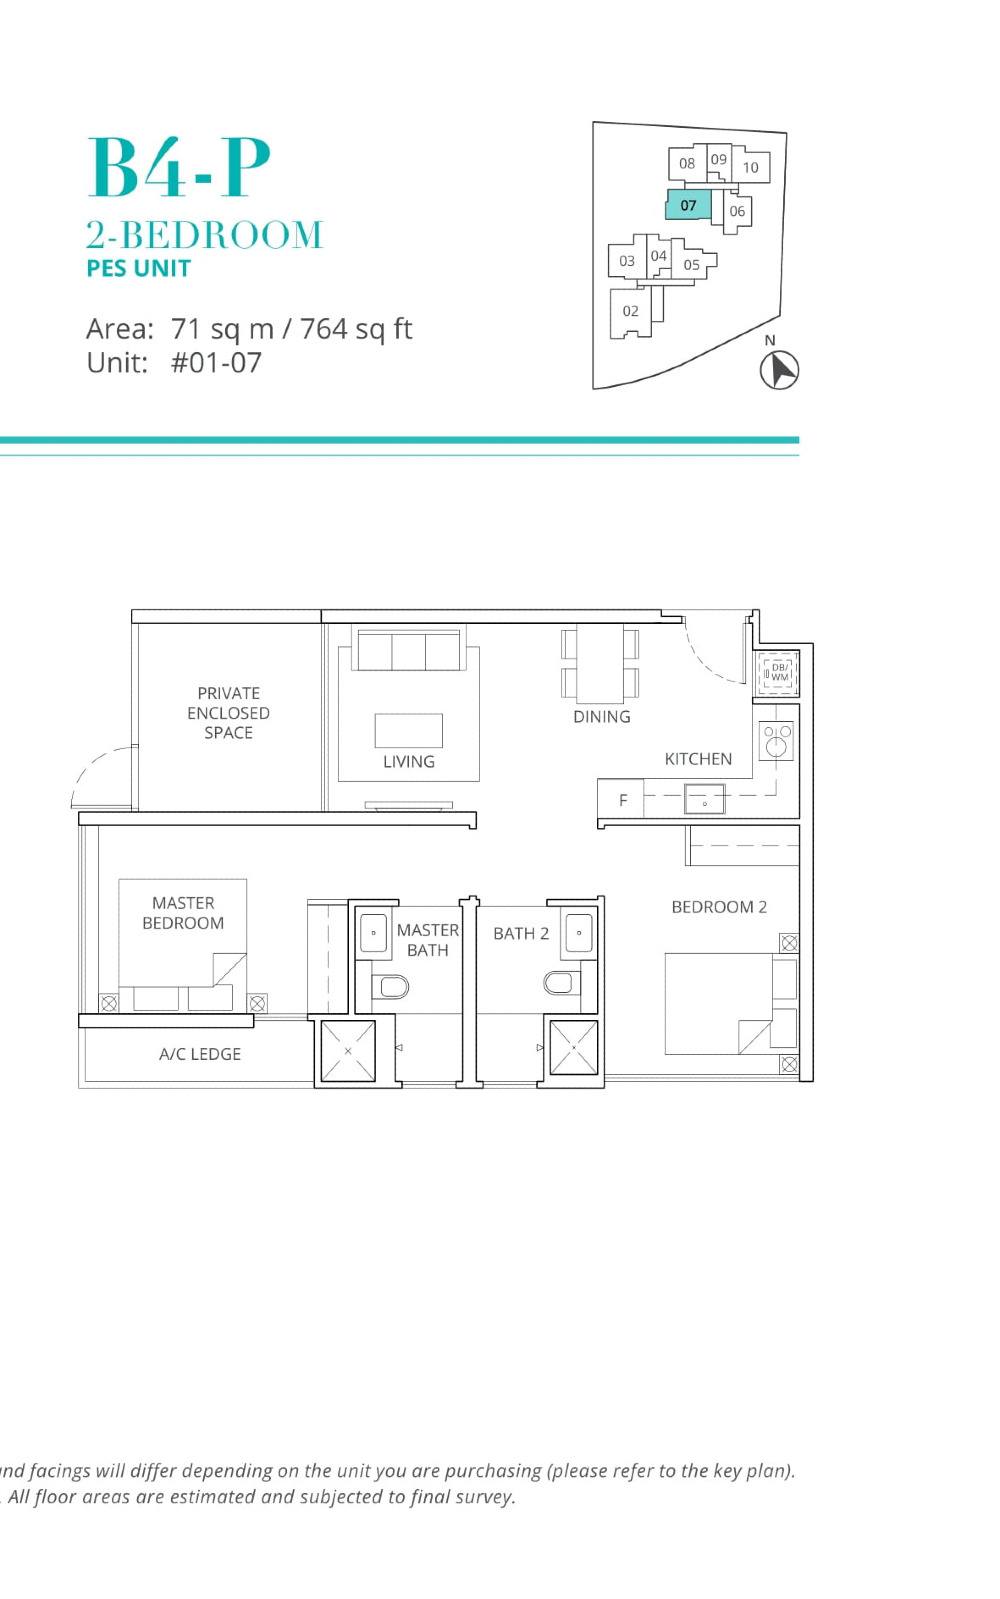 fp-casa-al-mare-b4p-floor-plan.jpg